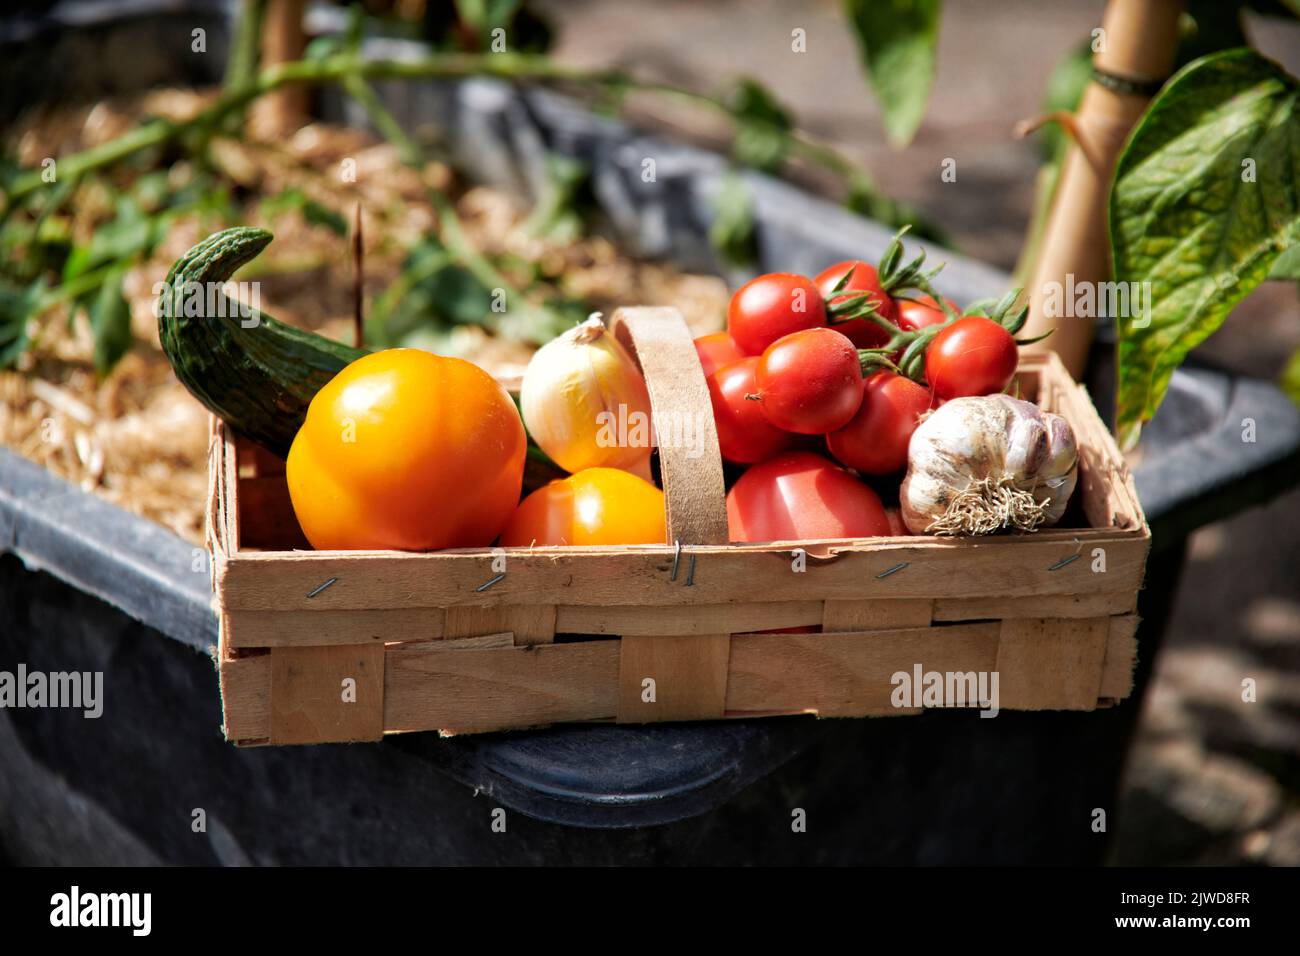 In einem Holzkorb befinden sich selbst im Garten angebautes Gemuese. Schlangengurke, verschiedene Tomatensorten, Knoblauch und Zwiebel. Foto de stock